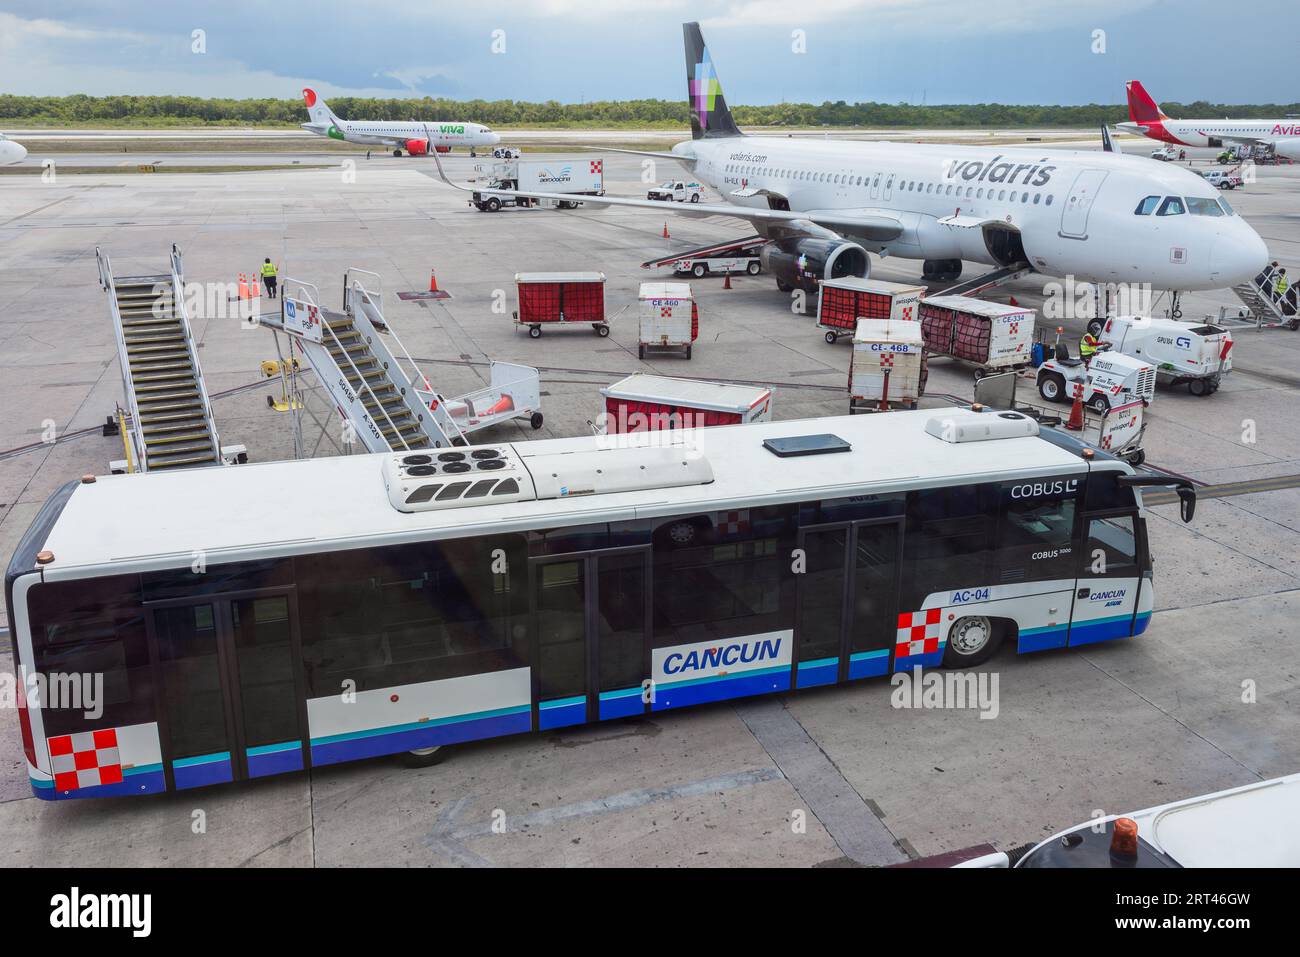 queretaro, Queretaro, 20 08 23, Cancun bus de passagers de la compagnie aérienne stationné devant un avion Banque D'Images